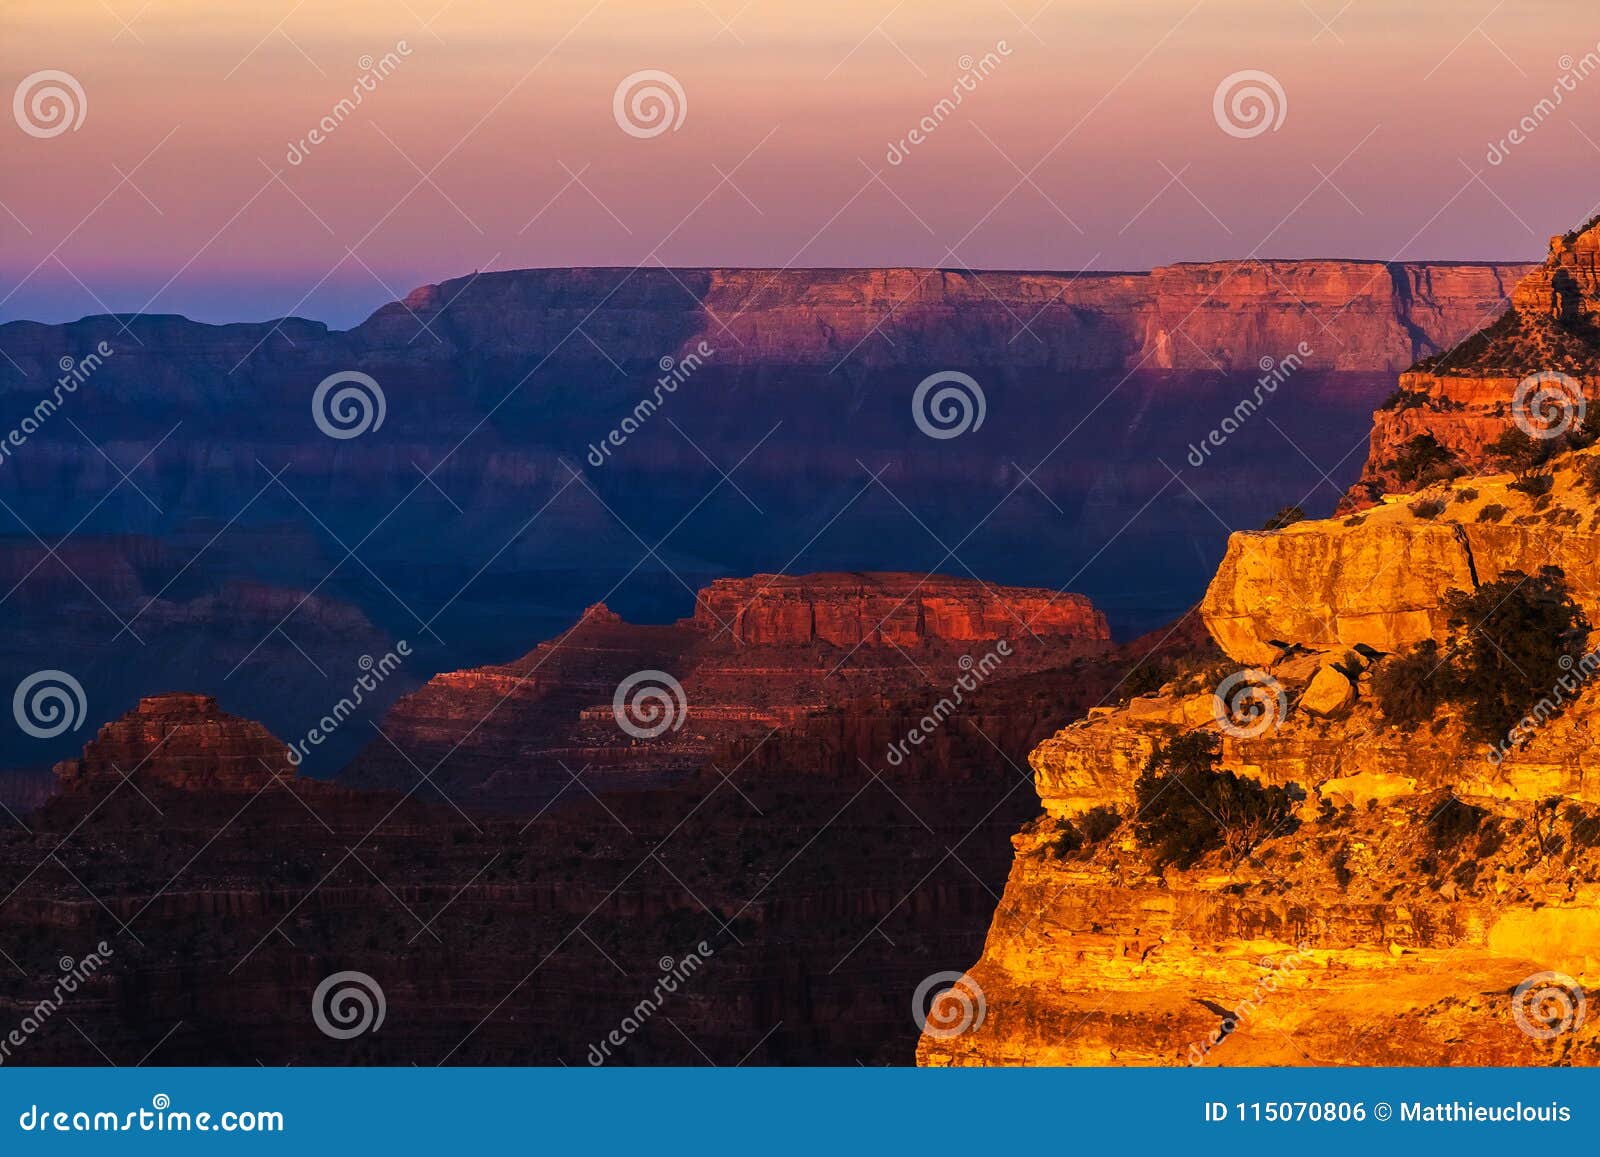 Beautiful and Dramatic Grand Canyon Overlook Foto de Stock - Imagem de ...